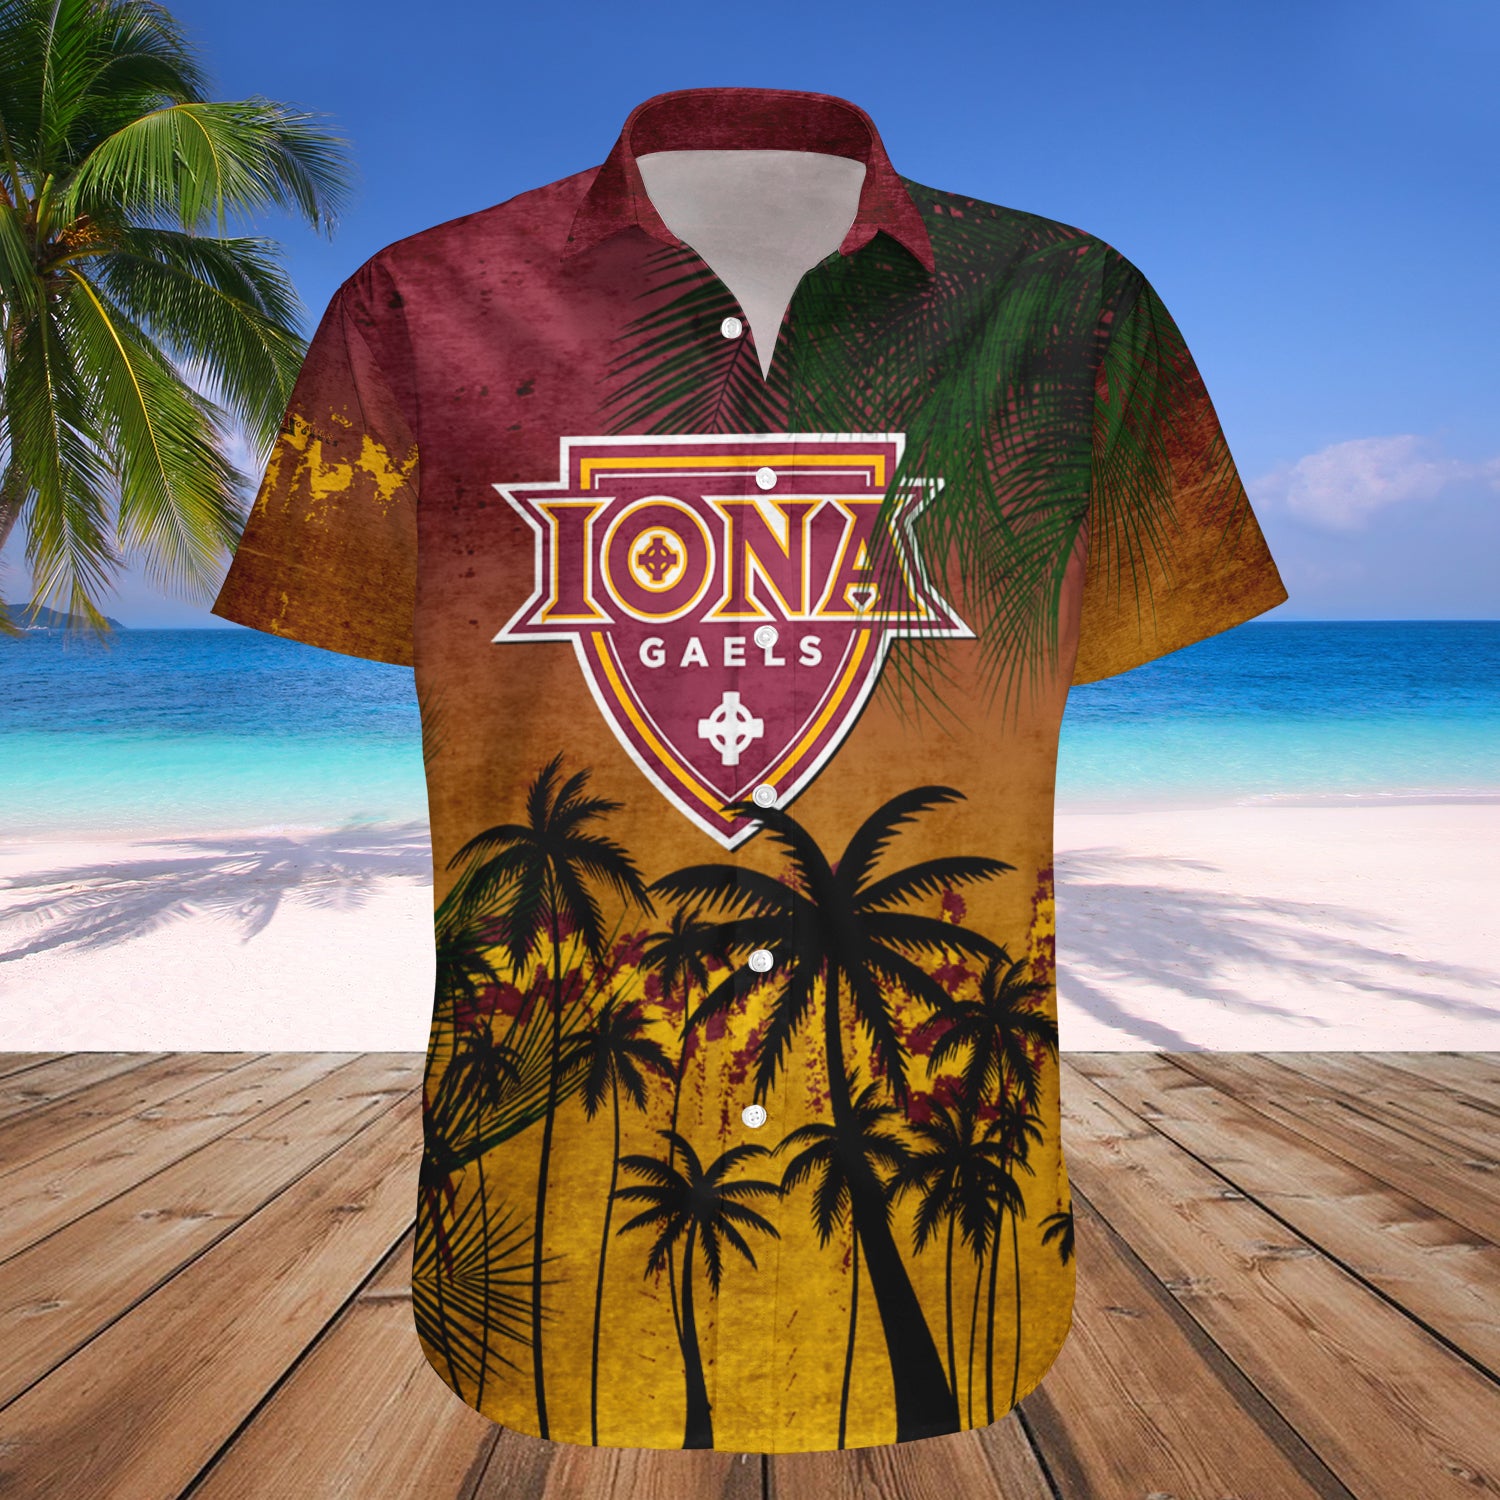 Iona Gaels Hawaiian Shirt Set Coconut Tree Tropical Grunge 1